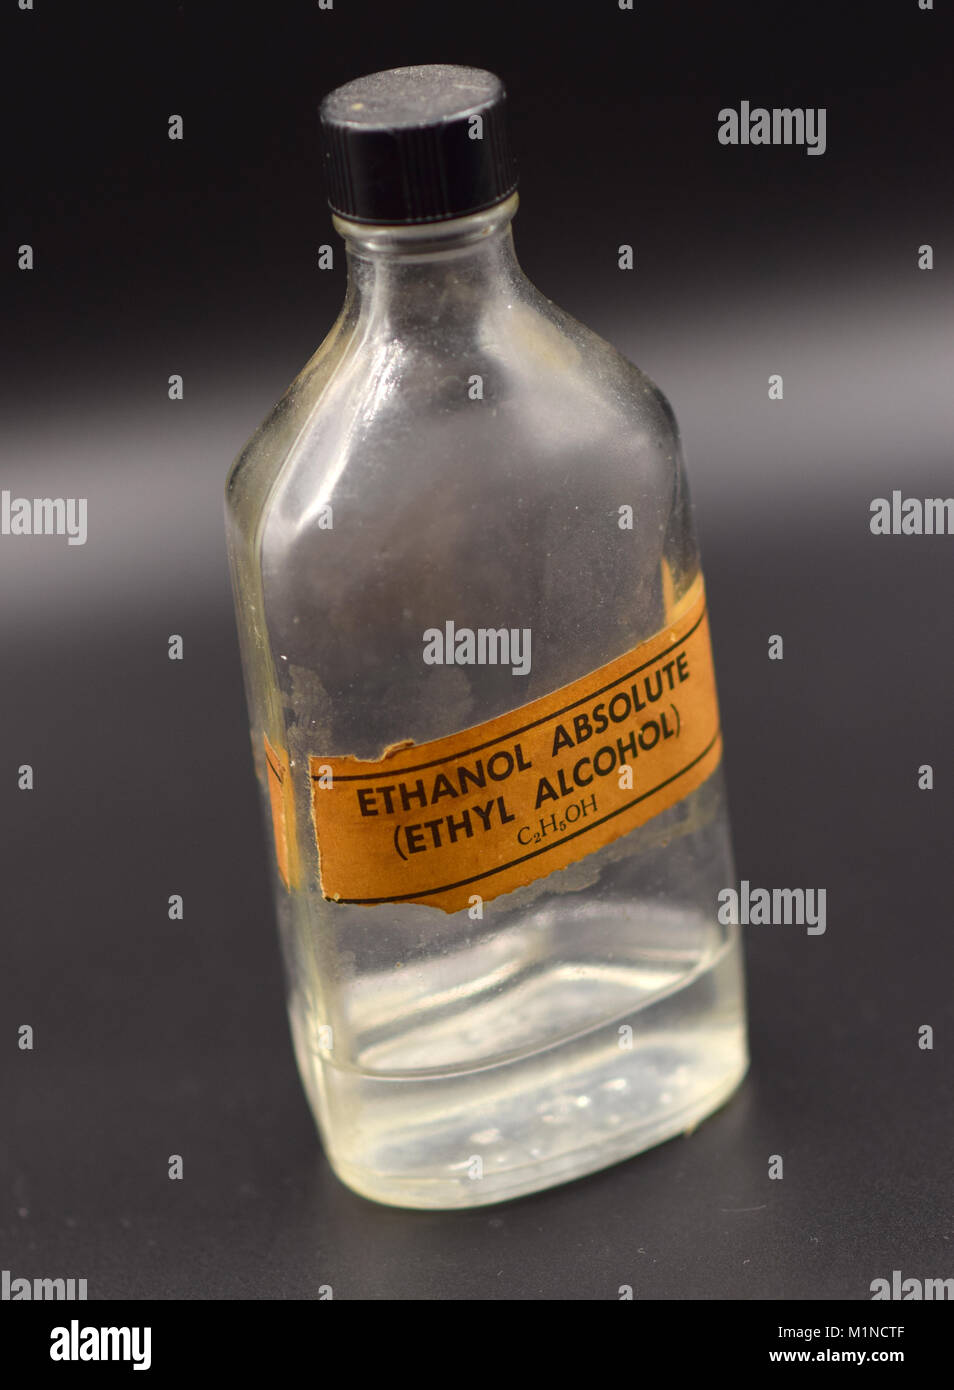 Alcol etilico immagini e fotografie stock ad alta risoluzione - Alamy